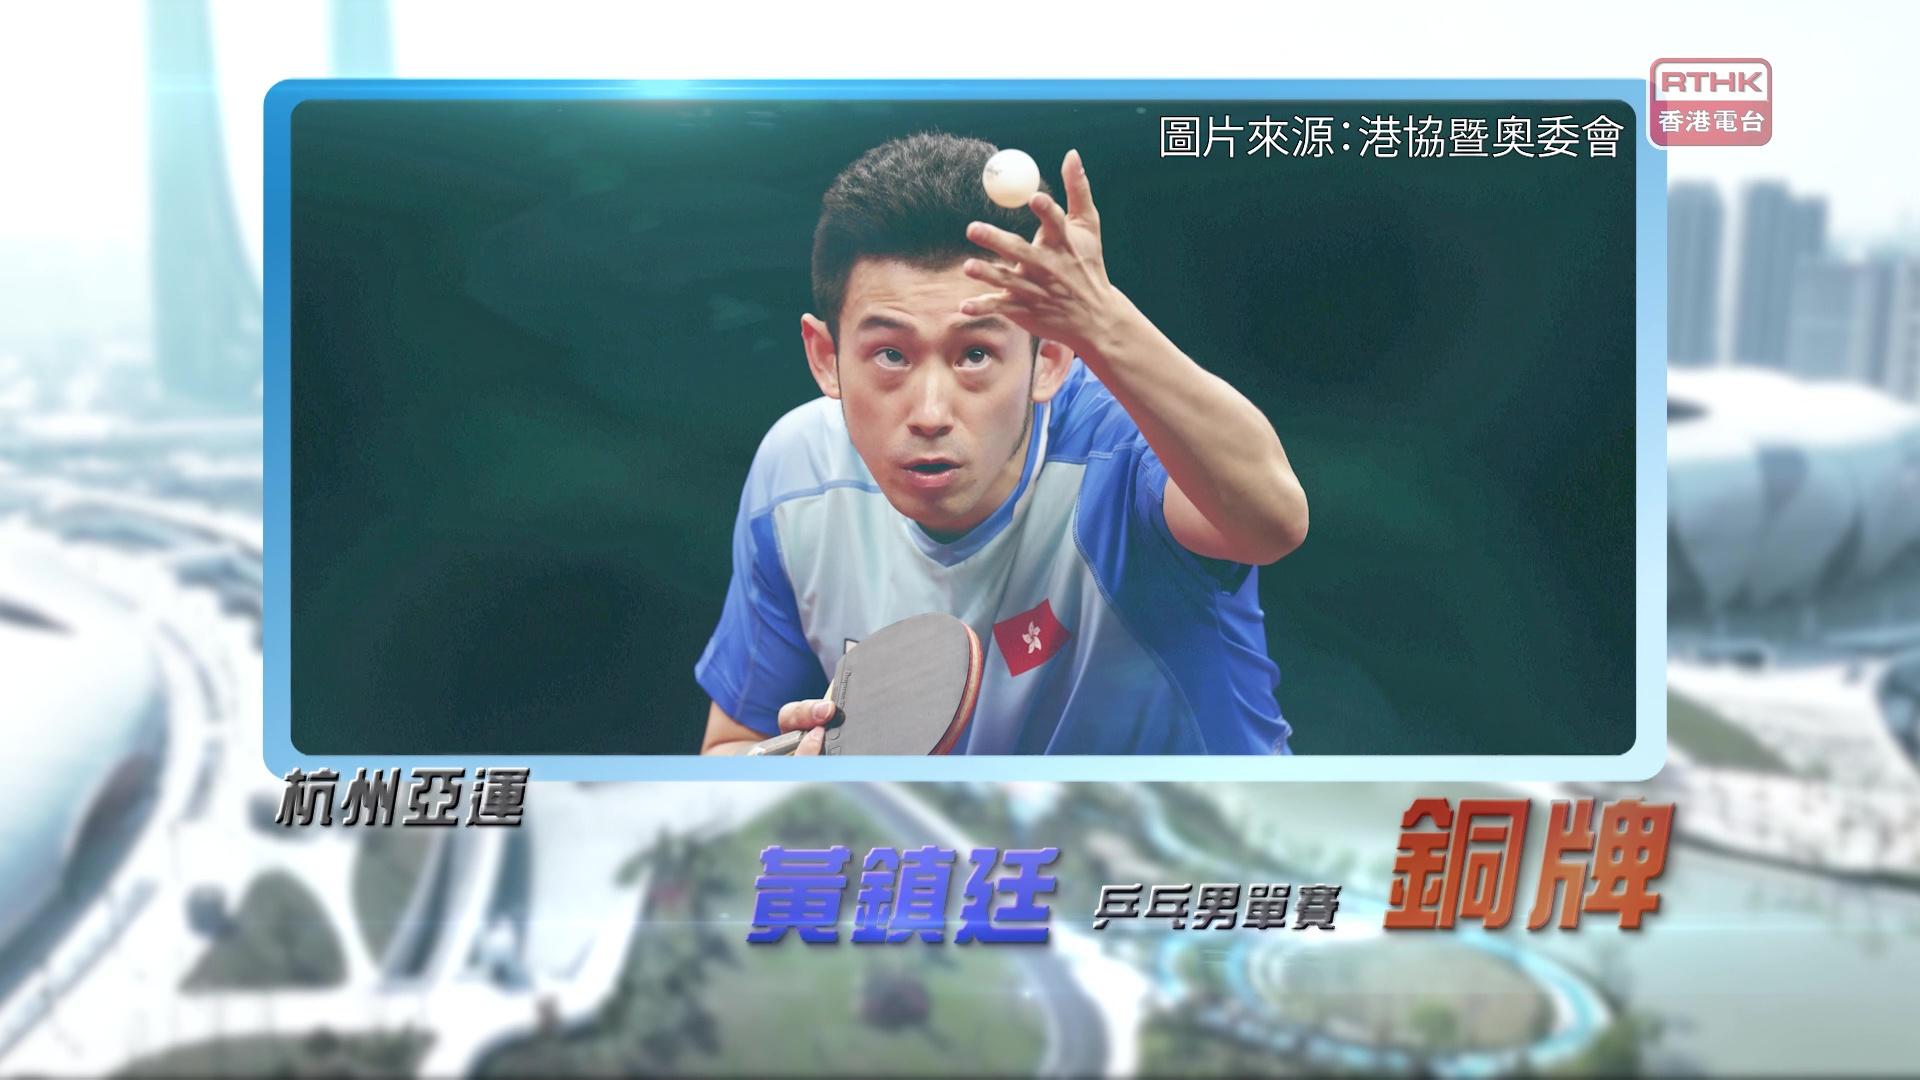 恭喜香港乒乓代表黄镇廷获得铜牌!